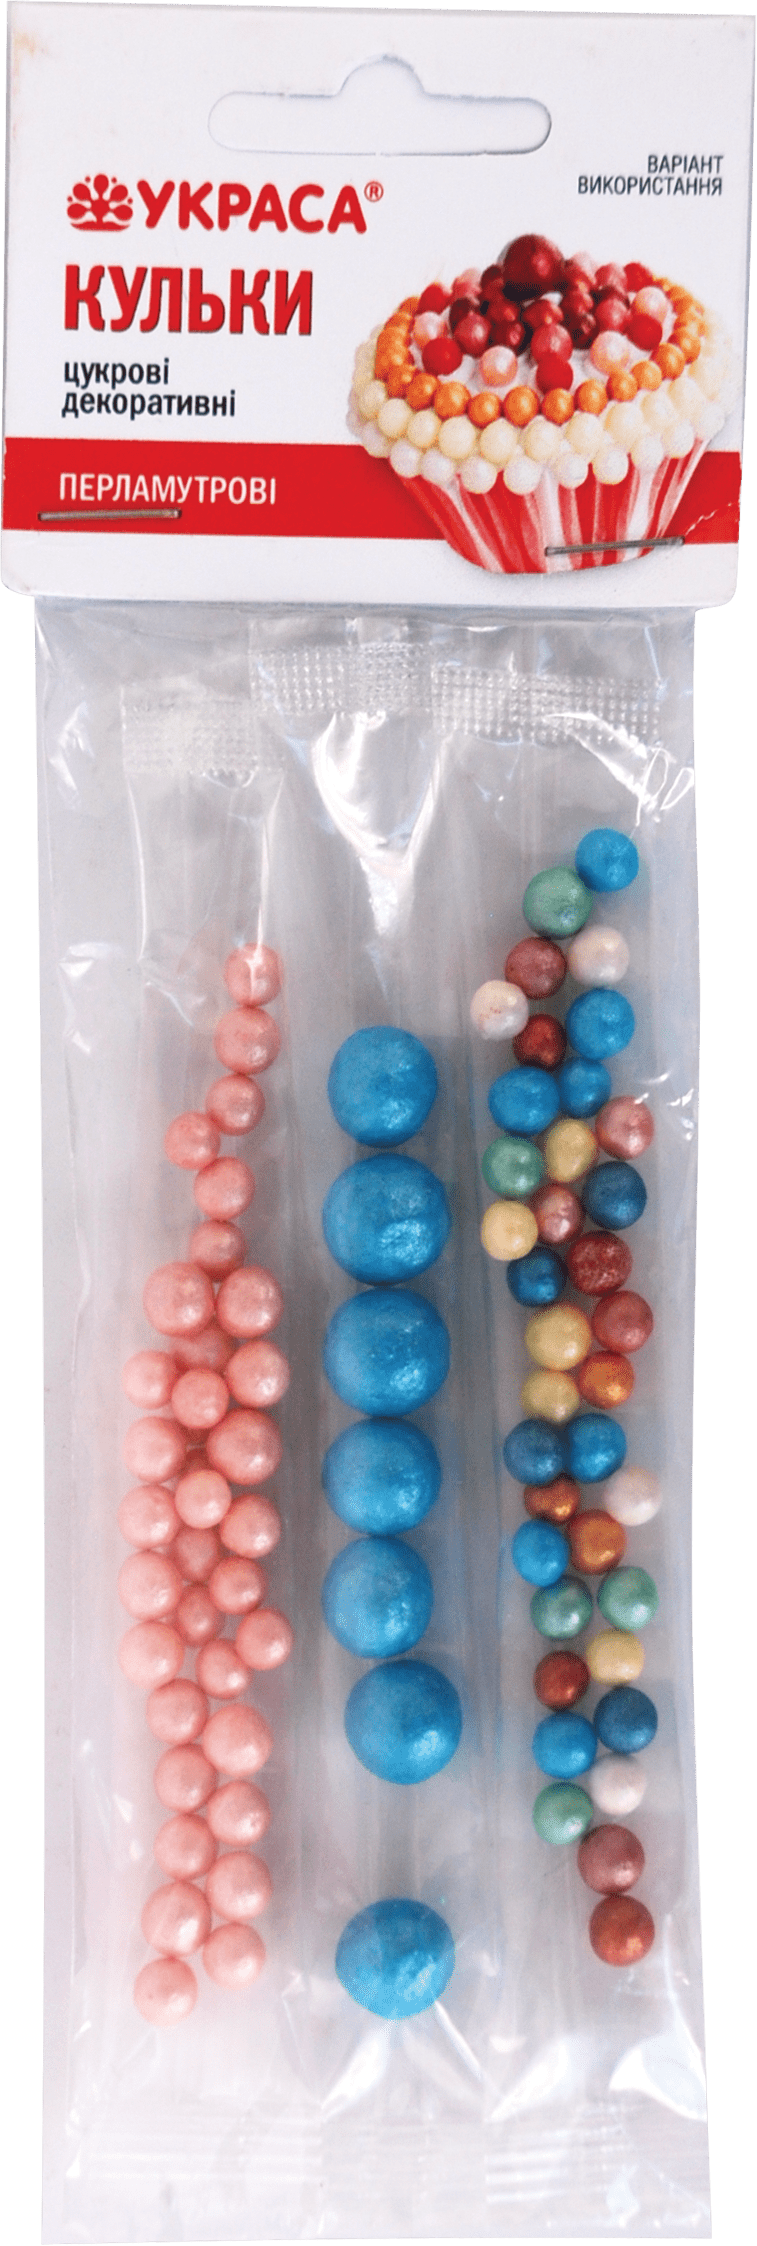 Сахарные шарики Украса декоративные перламутр 3 стики, 17 г, 1 упаковка